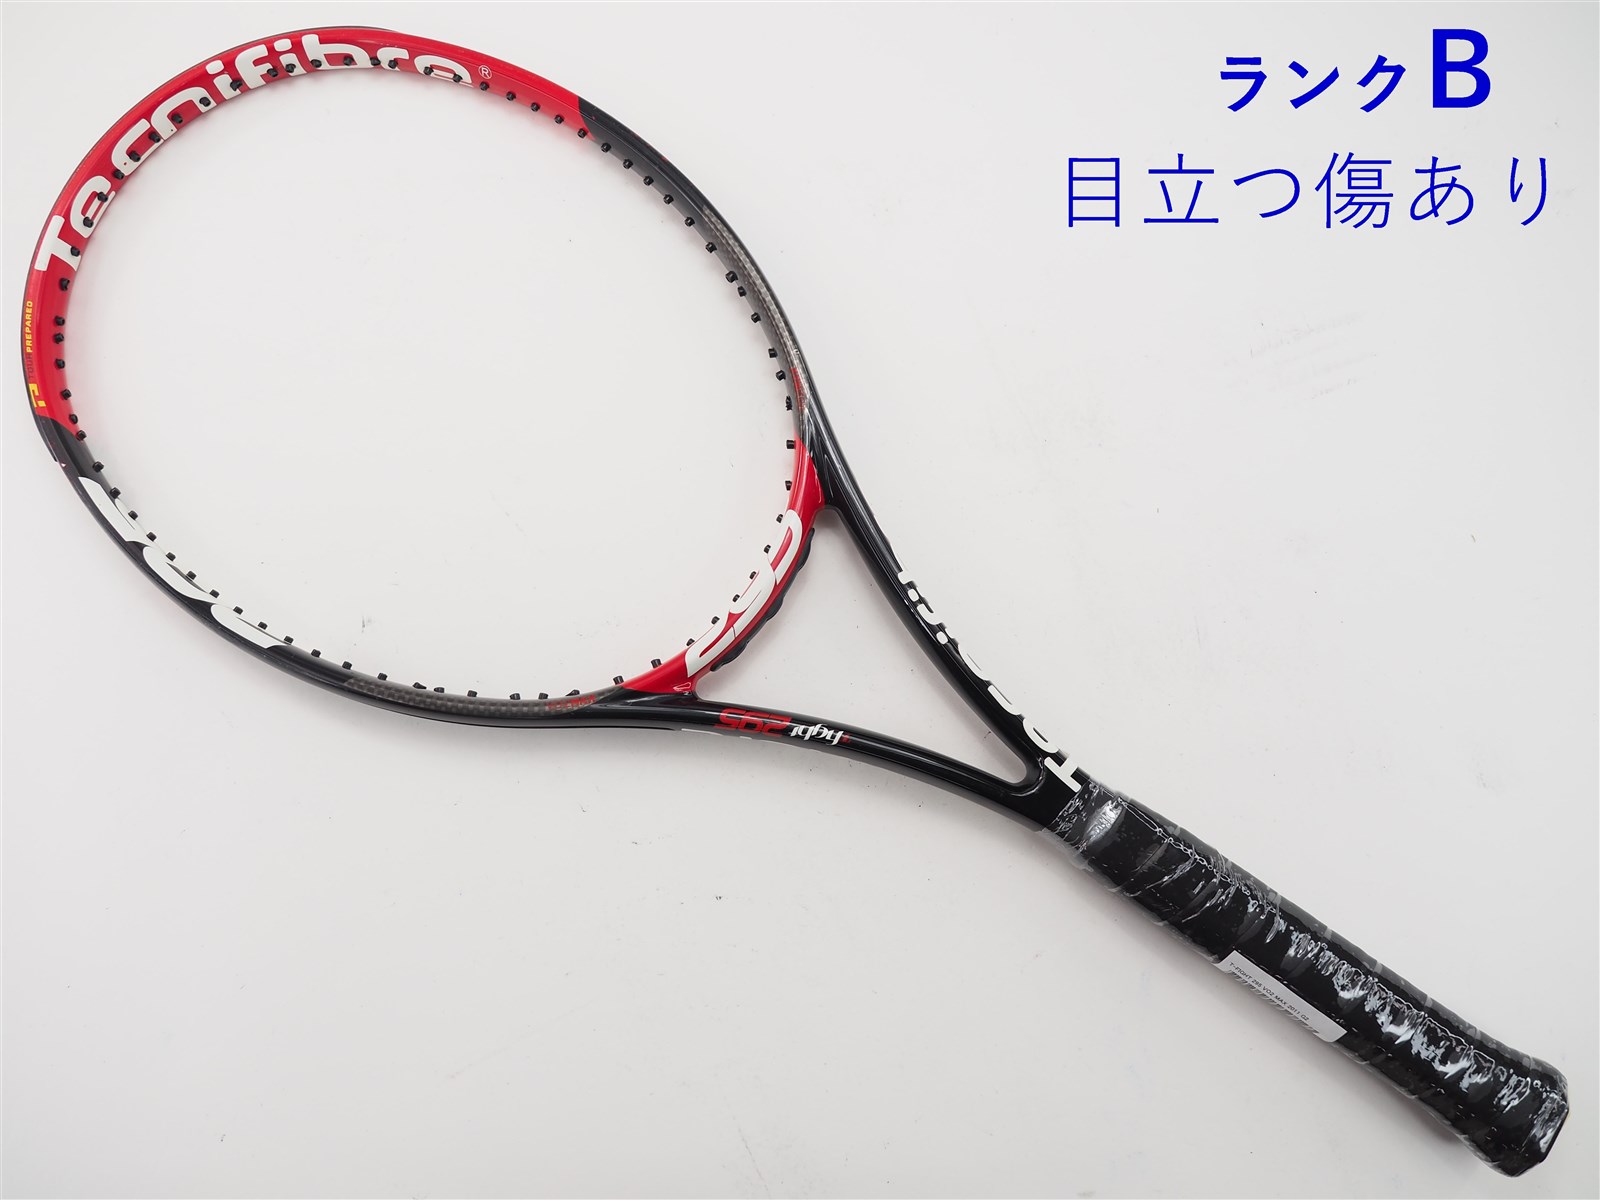 テニスラケット テクニファイバー ティーファイト 295 VO2 マックス 2011年モデル【一部グロメット割れ有り】 (G2)Tecnifibre T-FIGHT 295 VO2 MAX 2011